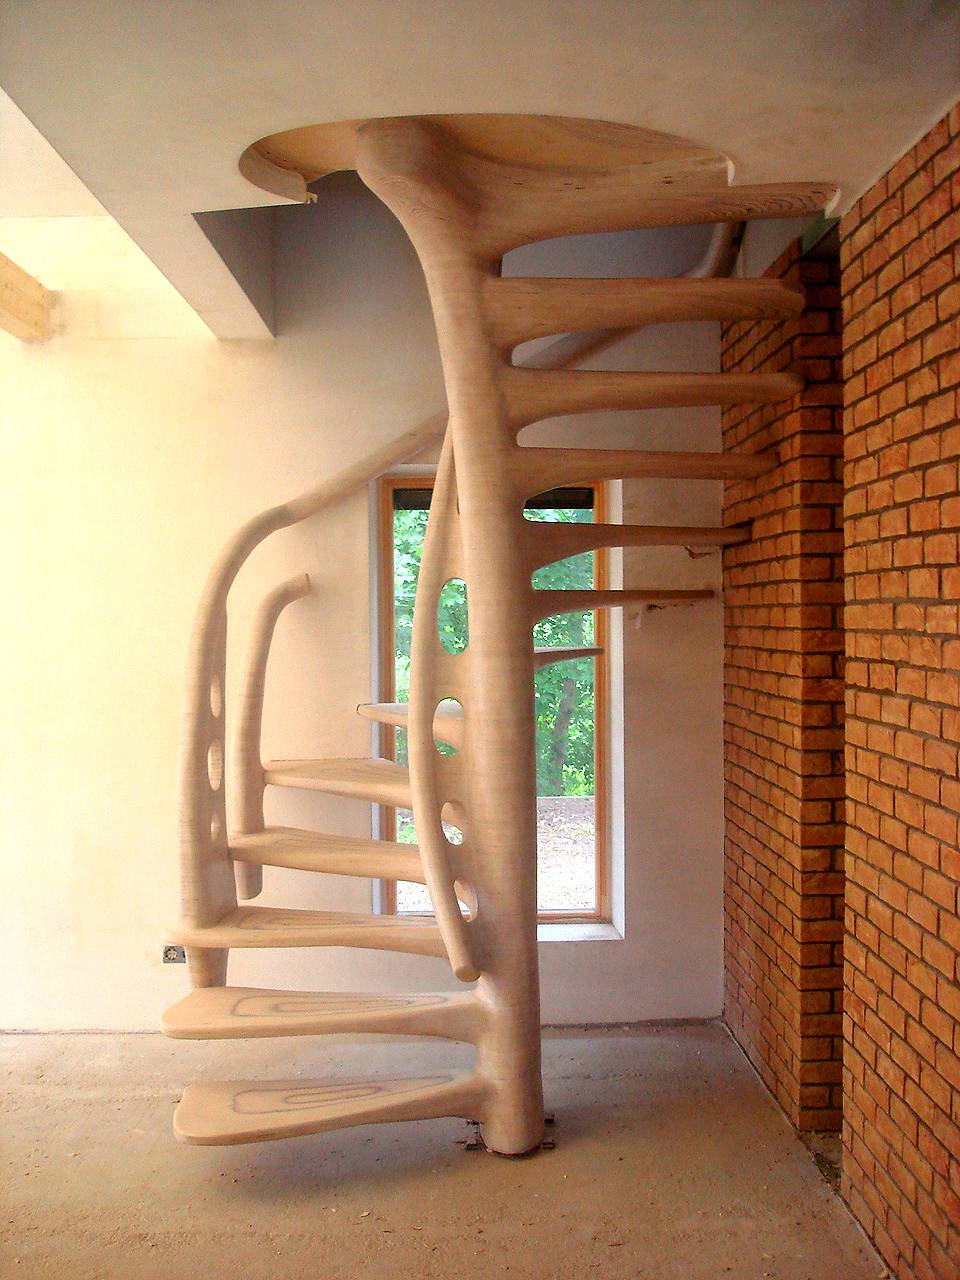 Деревянные винтовые лестницы на второй этаж своими руками: расчет, изготовление конструкции с фото и видео